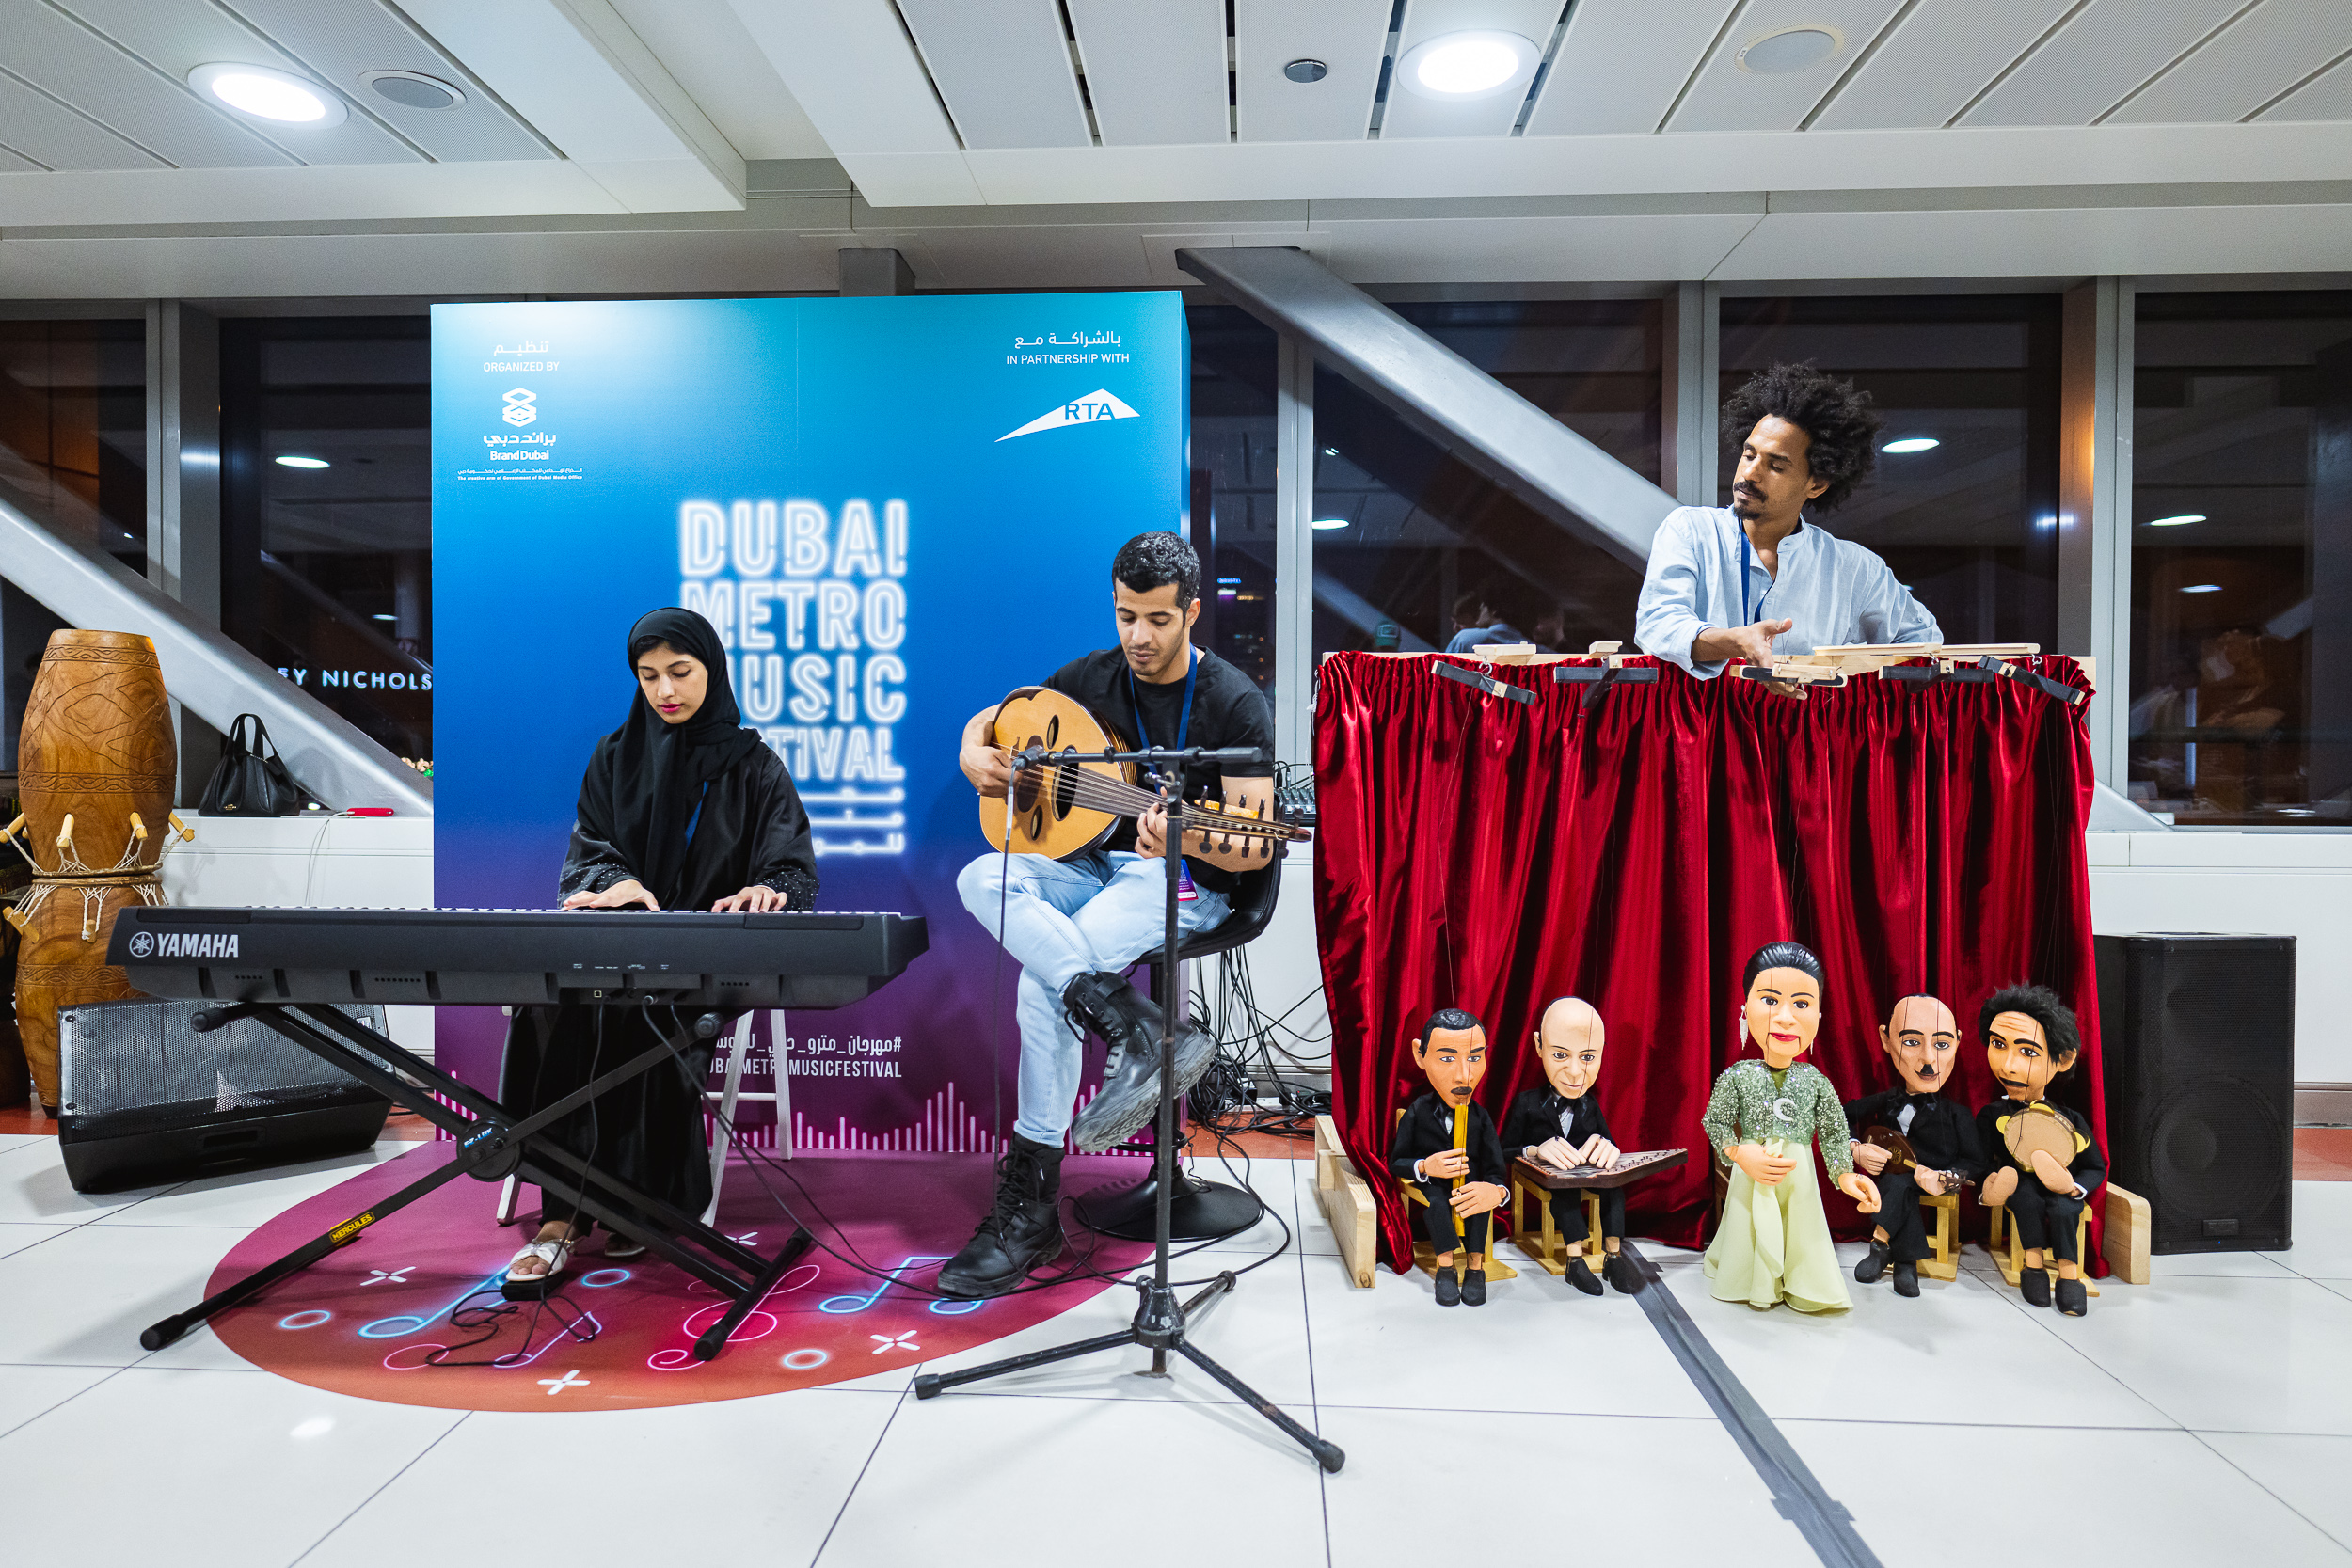 يضفي الموسيقيون العرب نكهة خاصة على مهرجان مترو دبي للموسيقى بمزيجهم المعقد من الأساليب التقليدية والمعاصرة